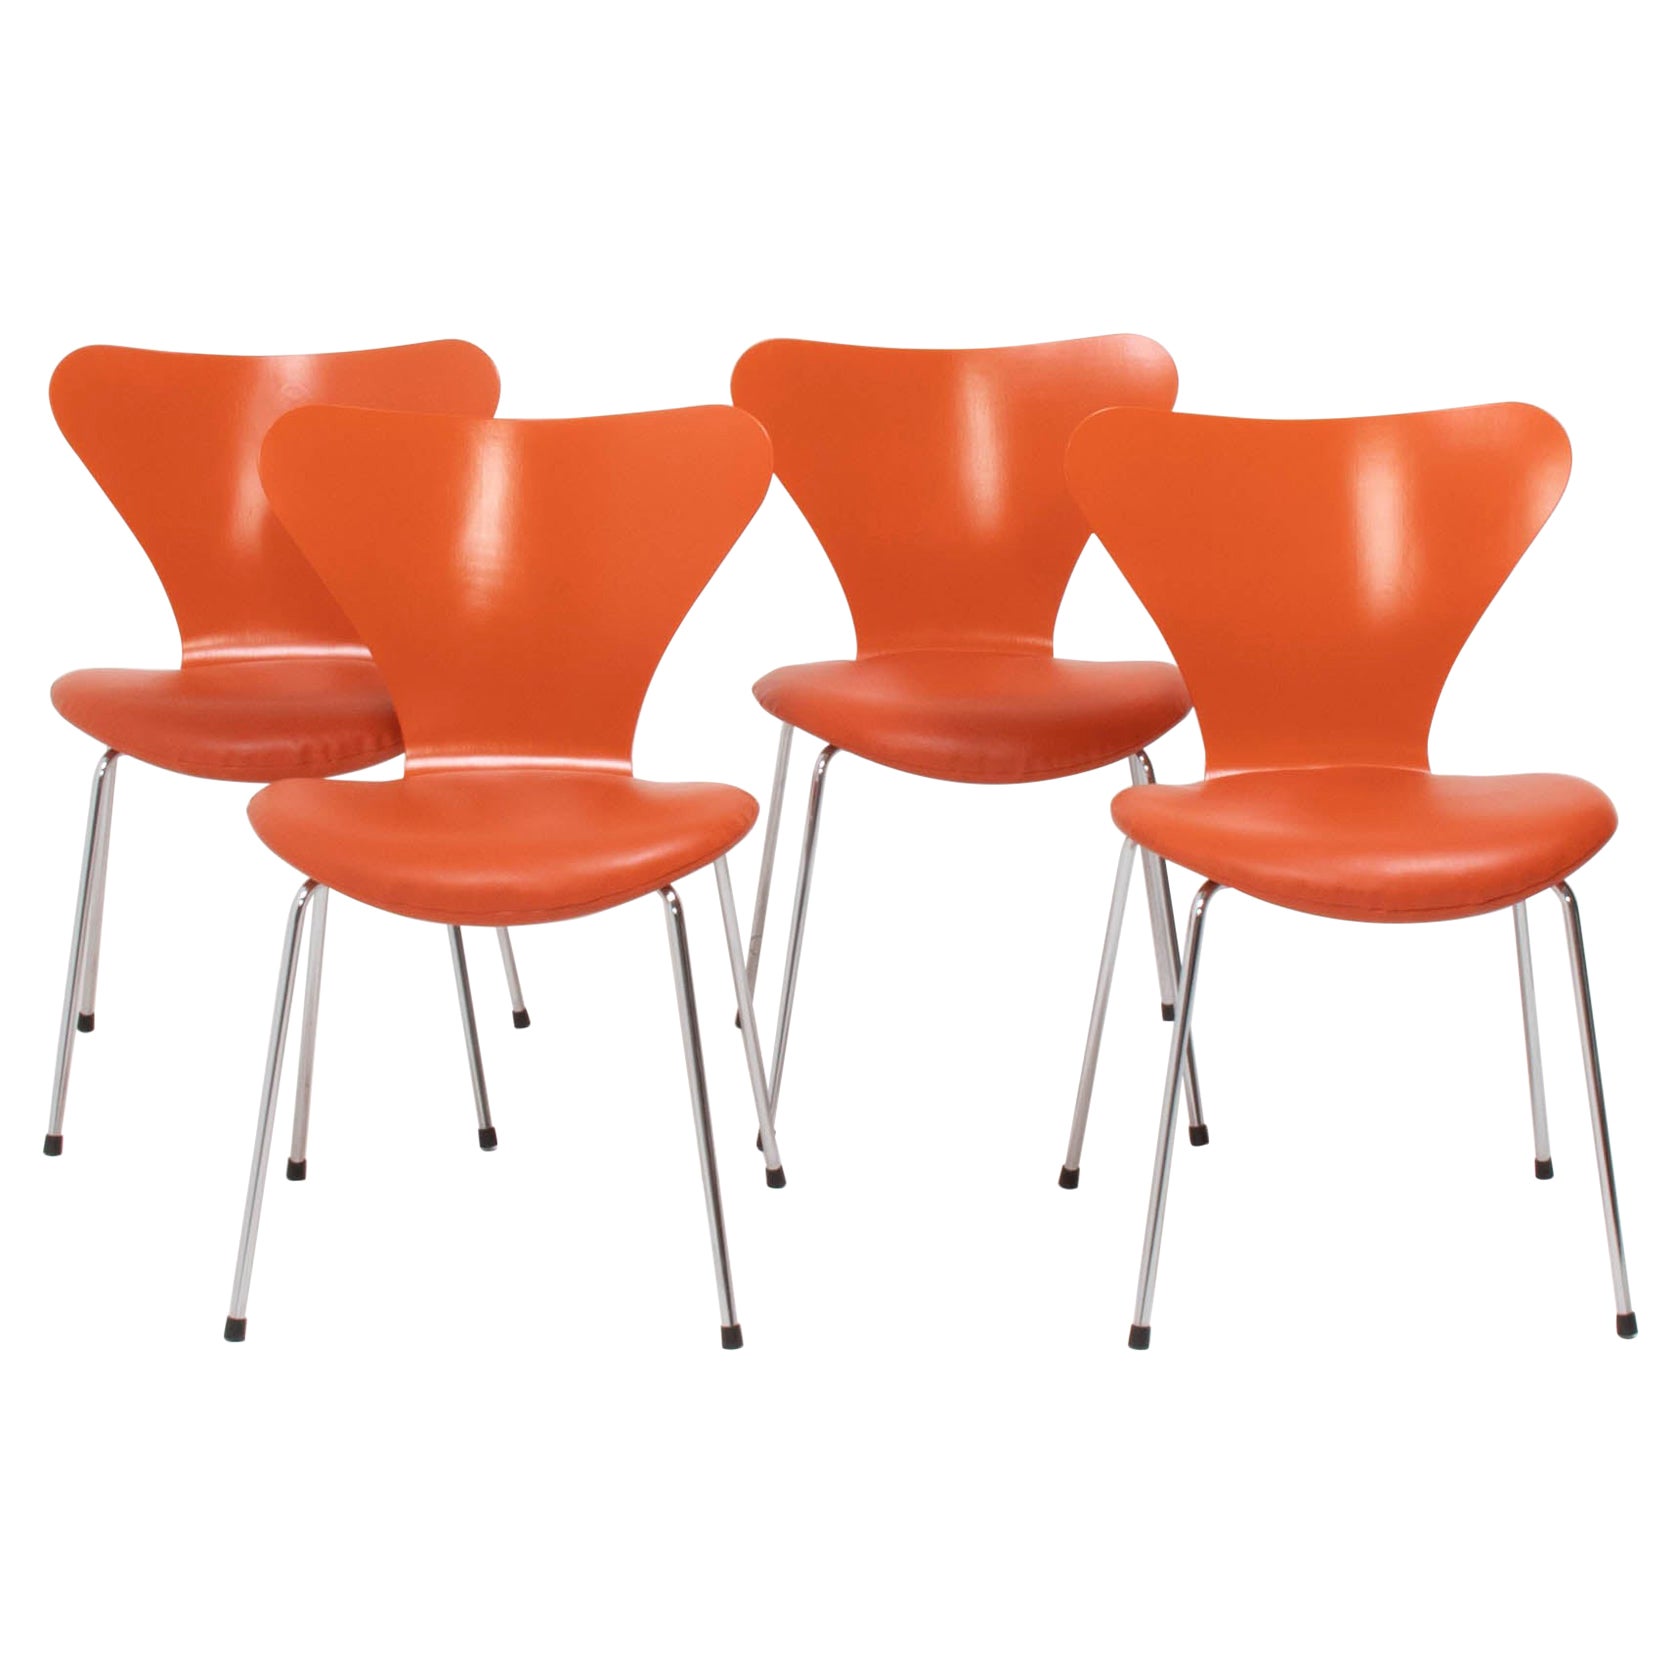 Chaises de salle à manger Series 7 Fritz Hansen par Arne Jacobsen en cuir orange, lot de 4